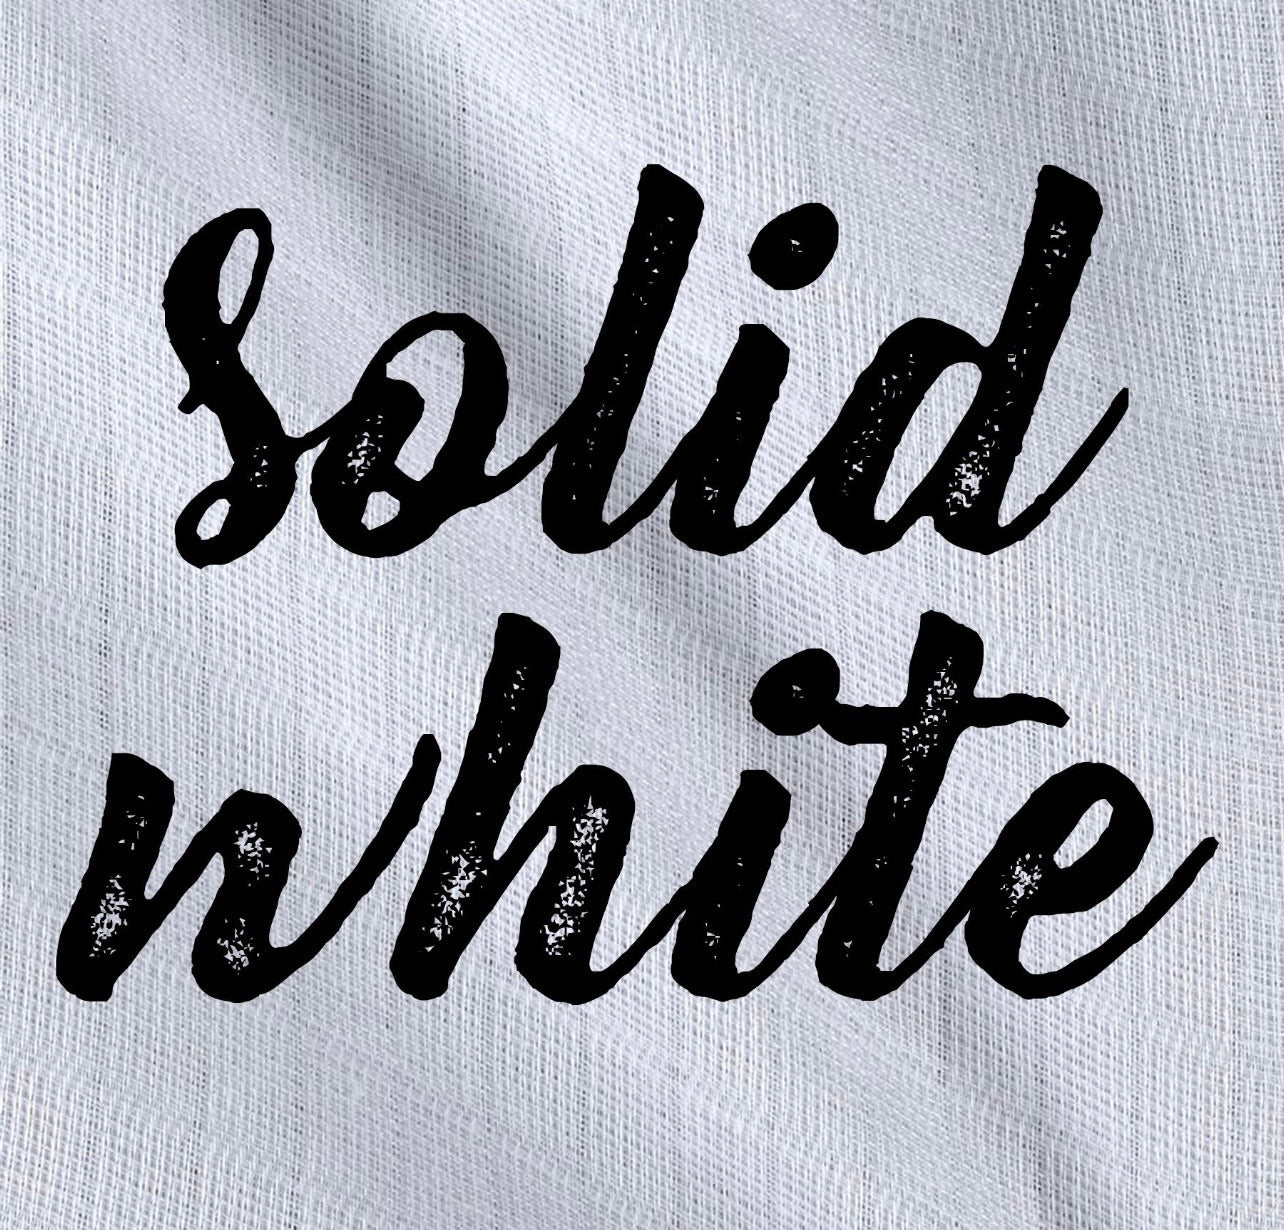 Retail - Cotton Gauze solids - 5 colors available - Black, Graphite, Teal,